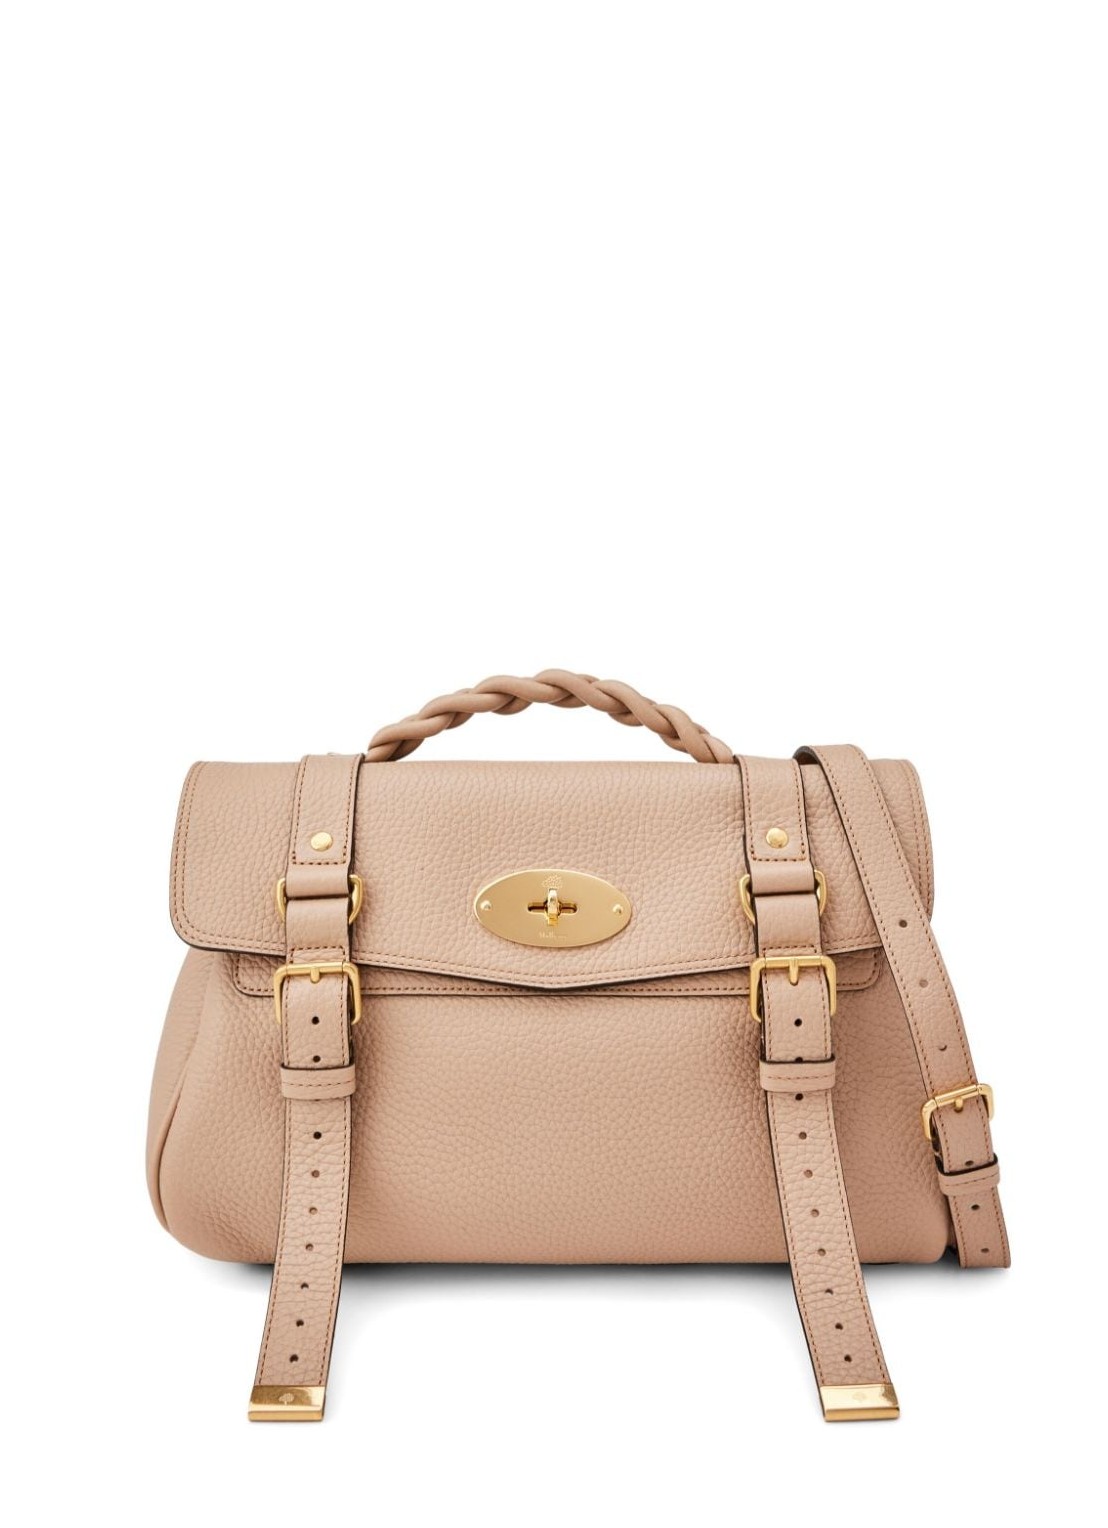 Handbag mulberry handbag woman alexa heavy grain hh6746736 e631 talla marron
 